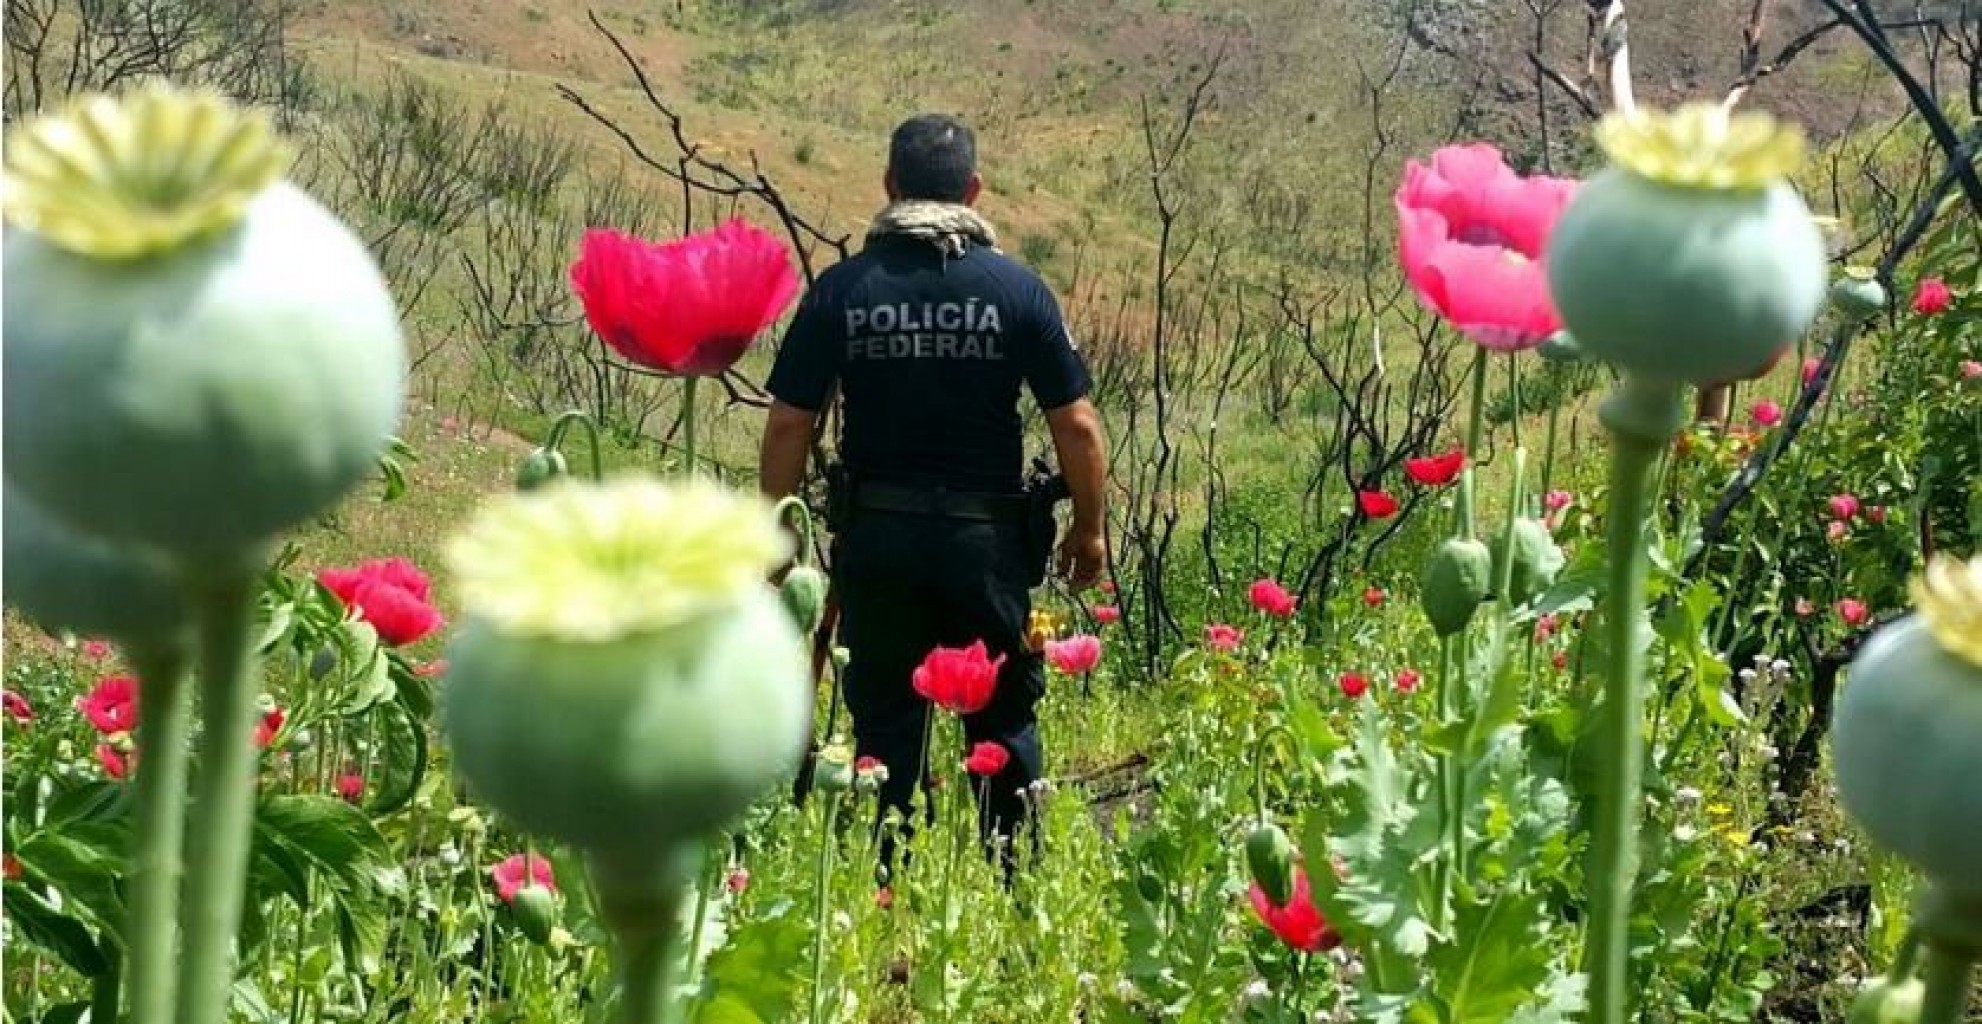 Legisladores Mexicanos planean legalizar producción de opio